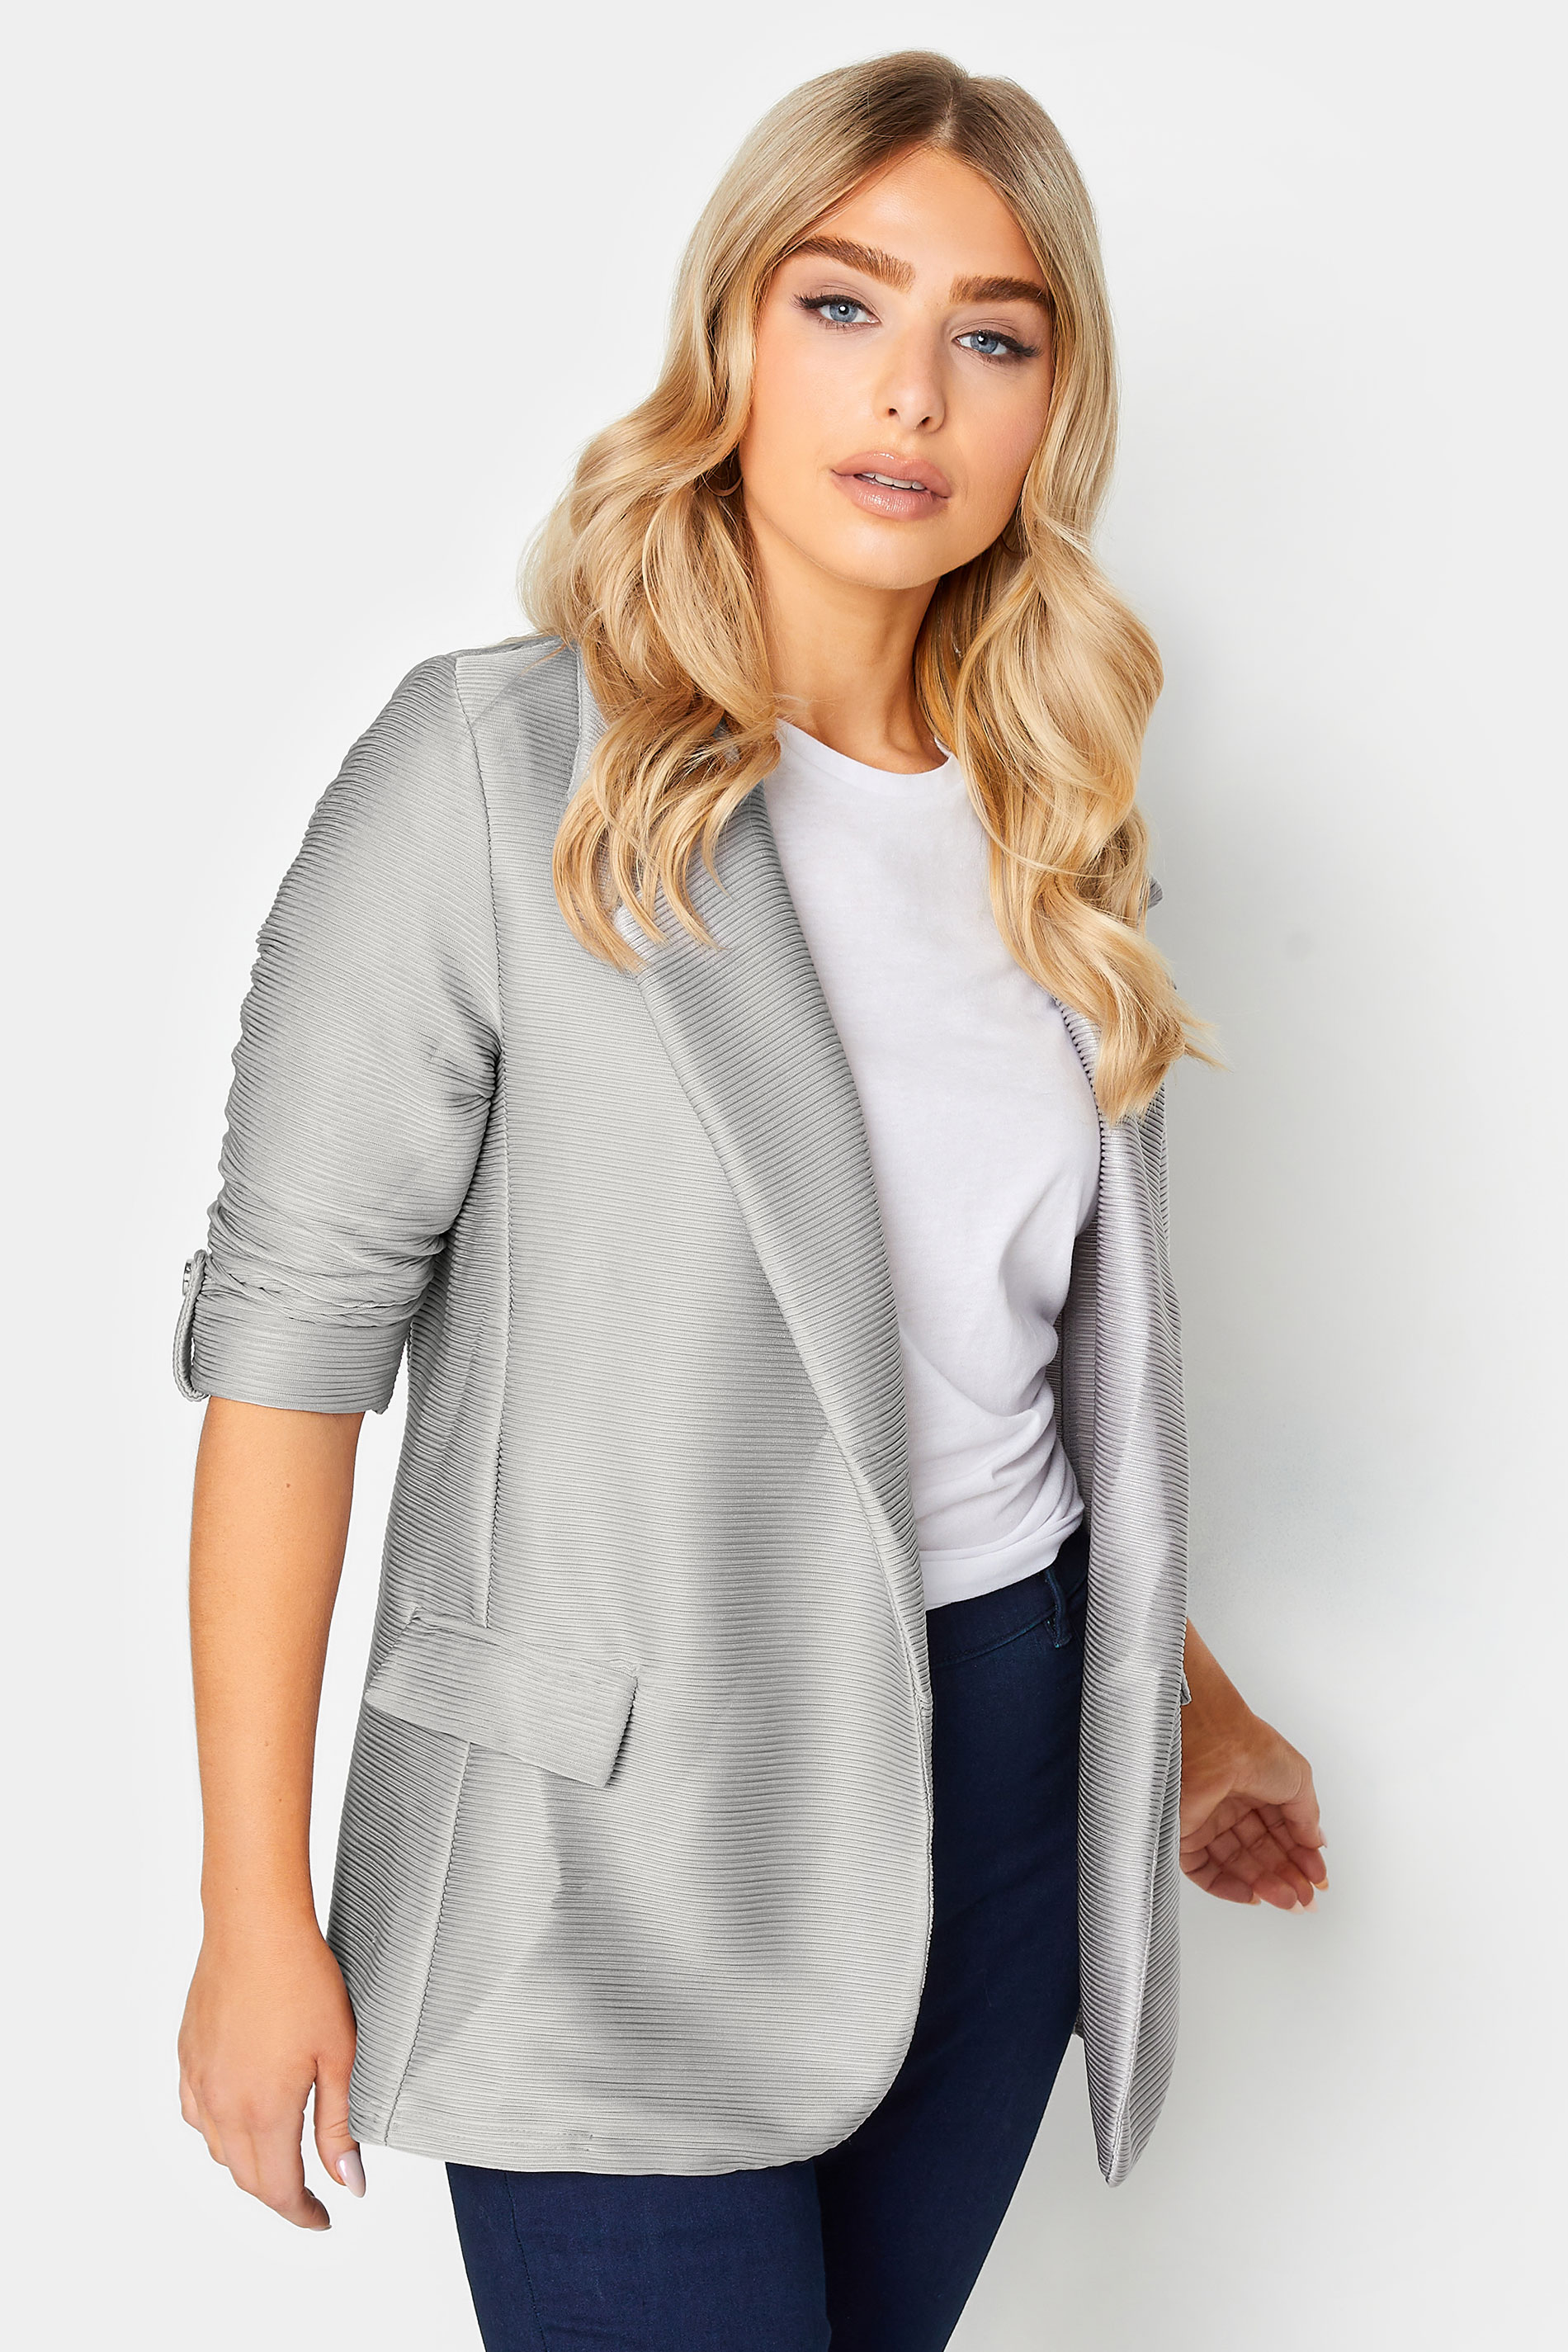 M&Co Grey Textured Blazer | M&Co 1